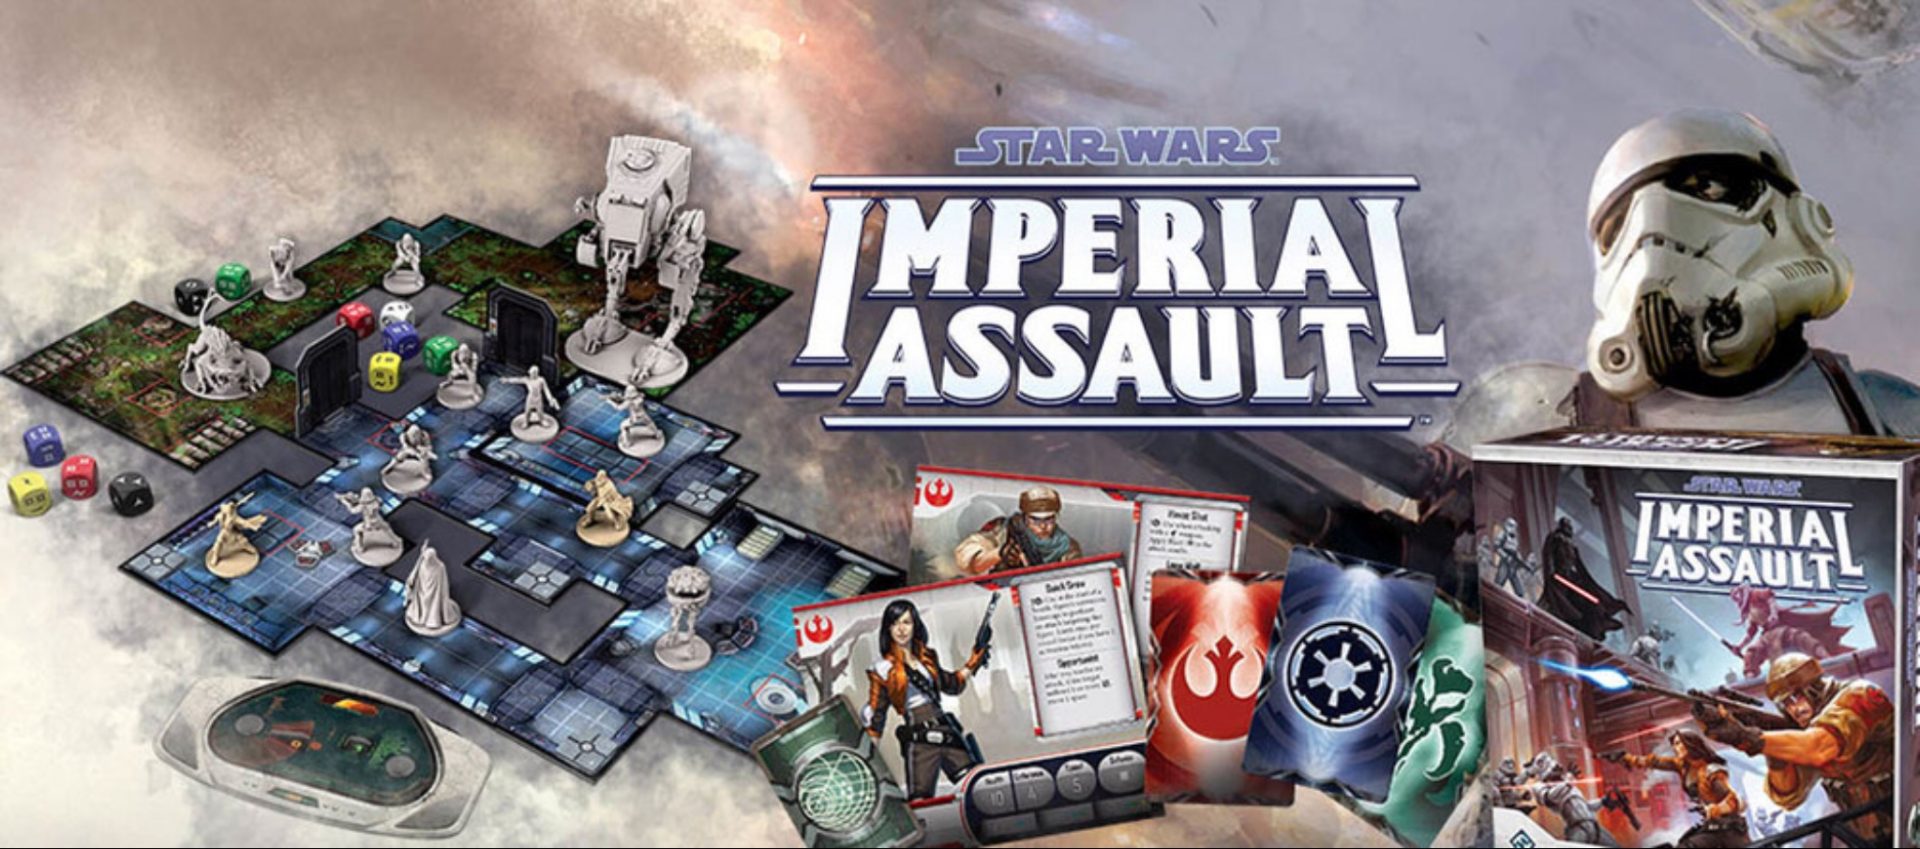 [REVIEW] Star Wars: Imperial Assault บอร์ดเกม RPG Strategy สุดมันส์ ที่จะพาคุณและแก๊งสู่จักรวาลอันไกลโพ้น